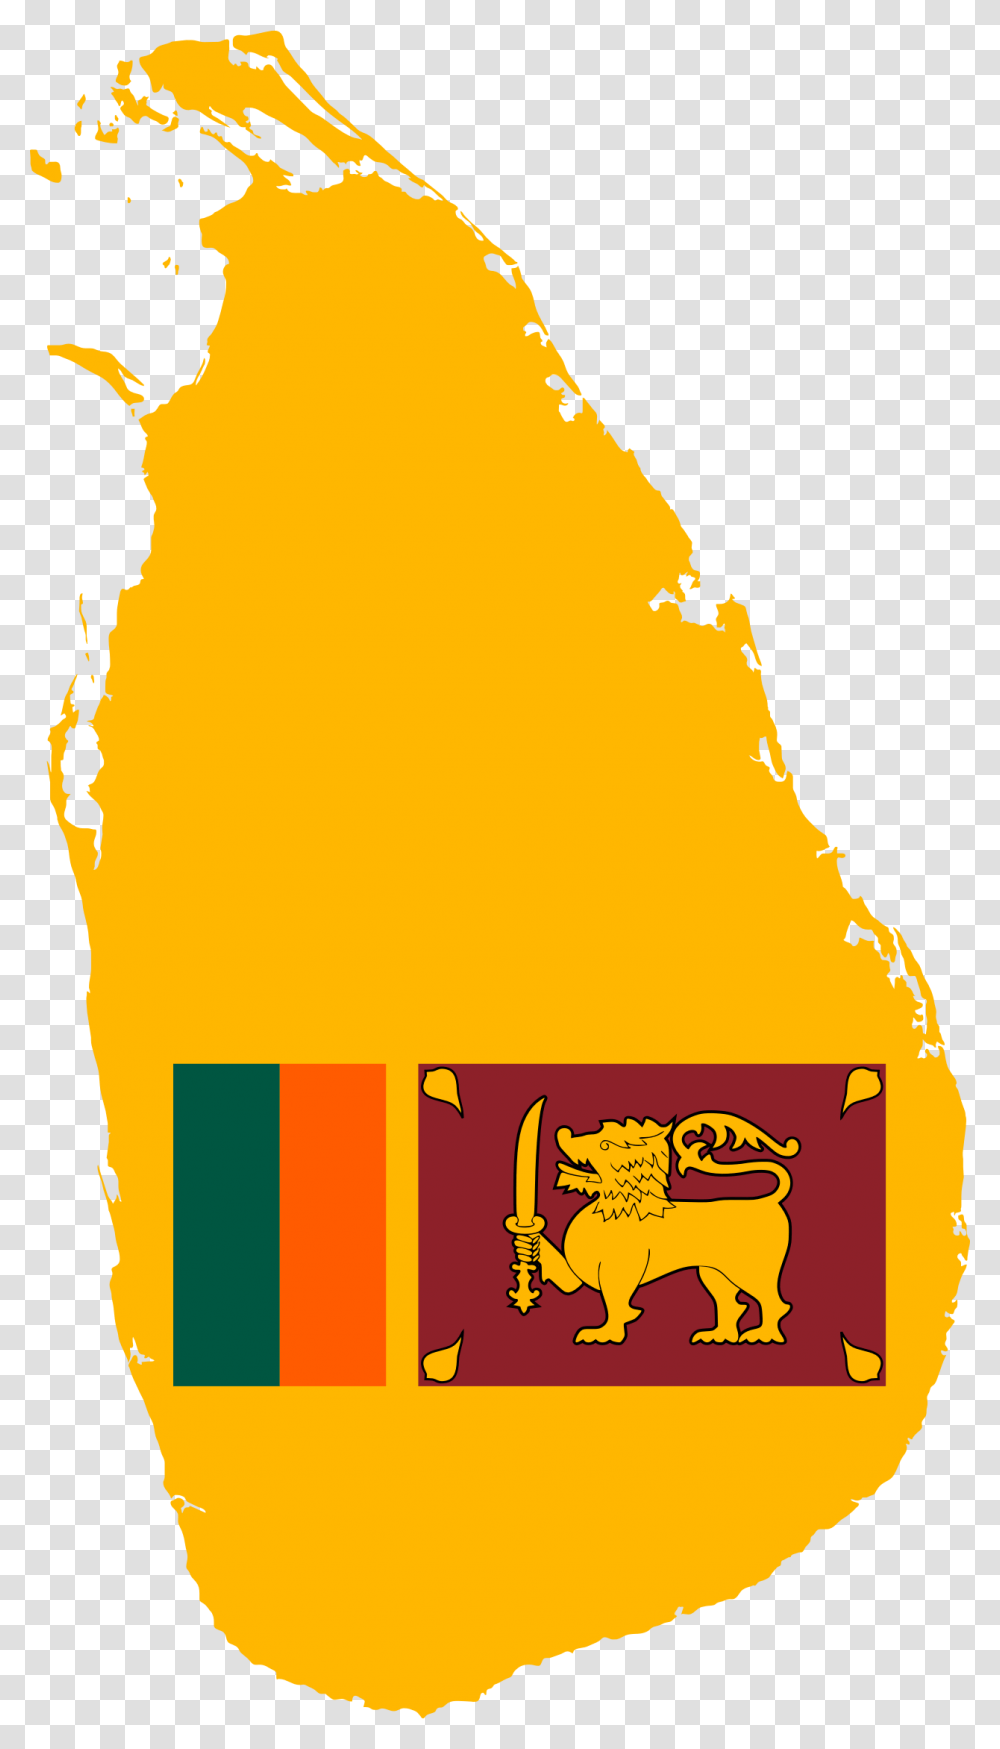 Sri Lanka Map Flag Clip Arts Flag Of Sri Lanka, Fire, Food, Beverage, Honey Transparent Png